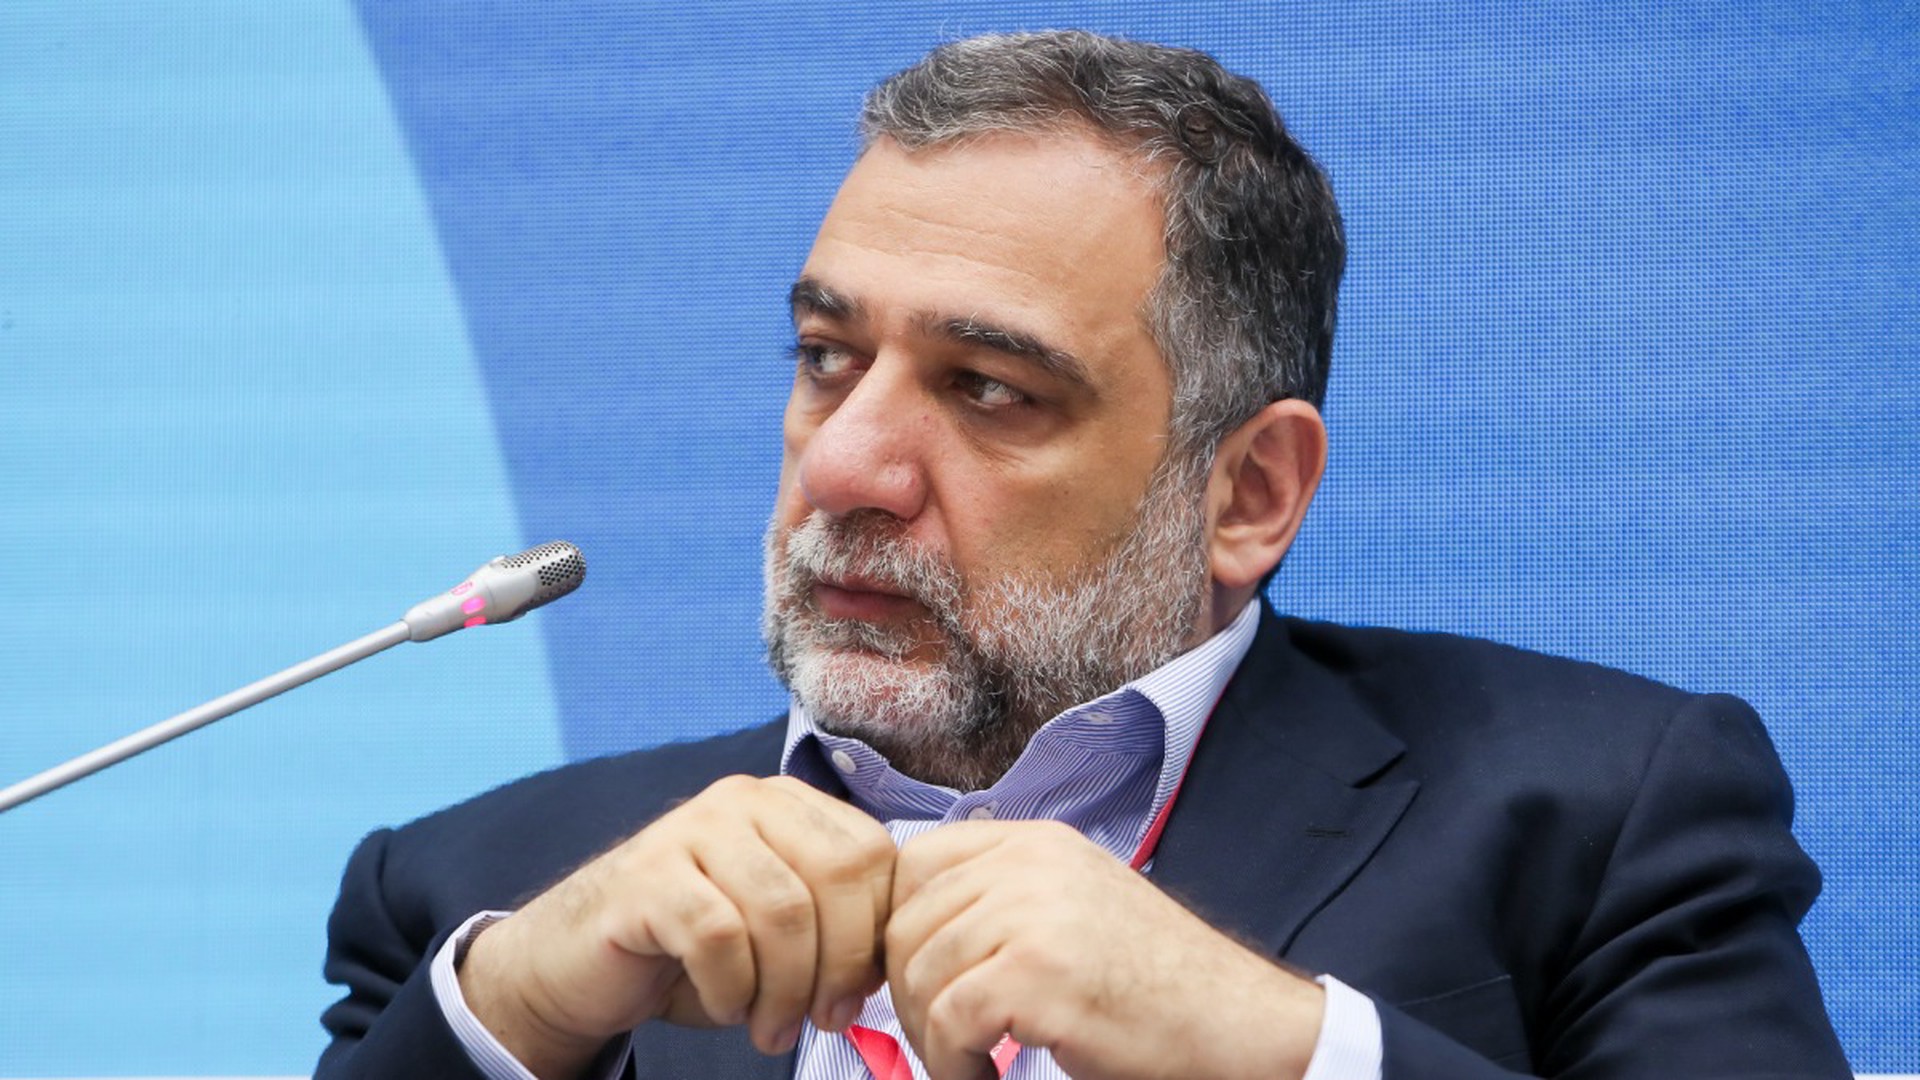 Миллиардер из списка Forbes Варданян отказался от гражданства России и уехал в Карабах